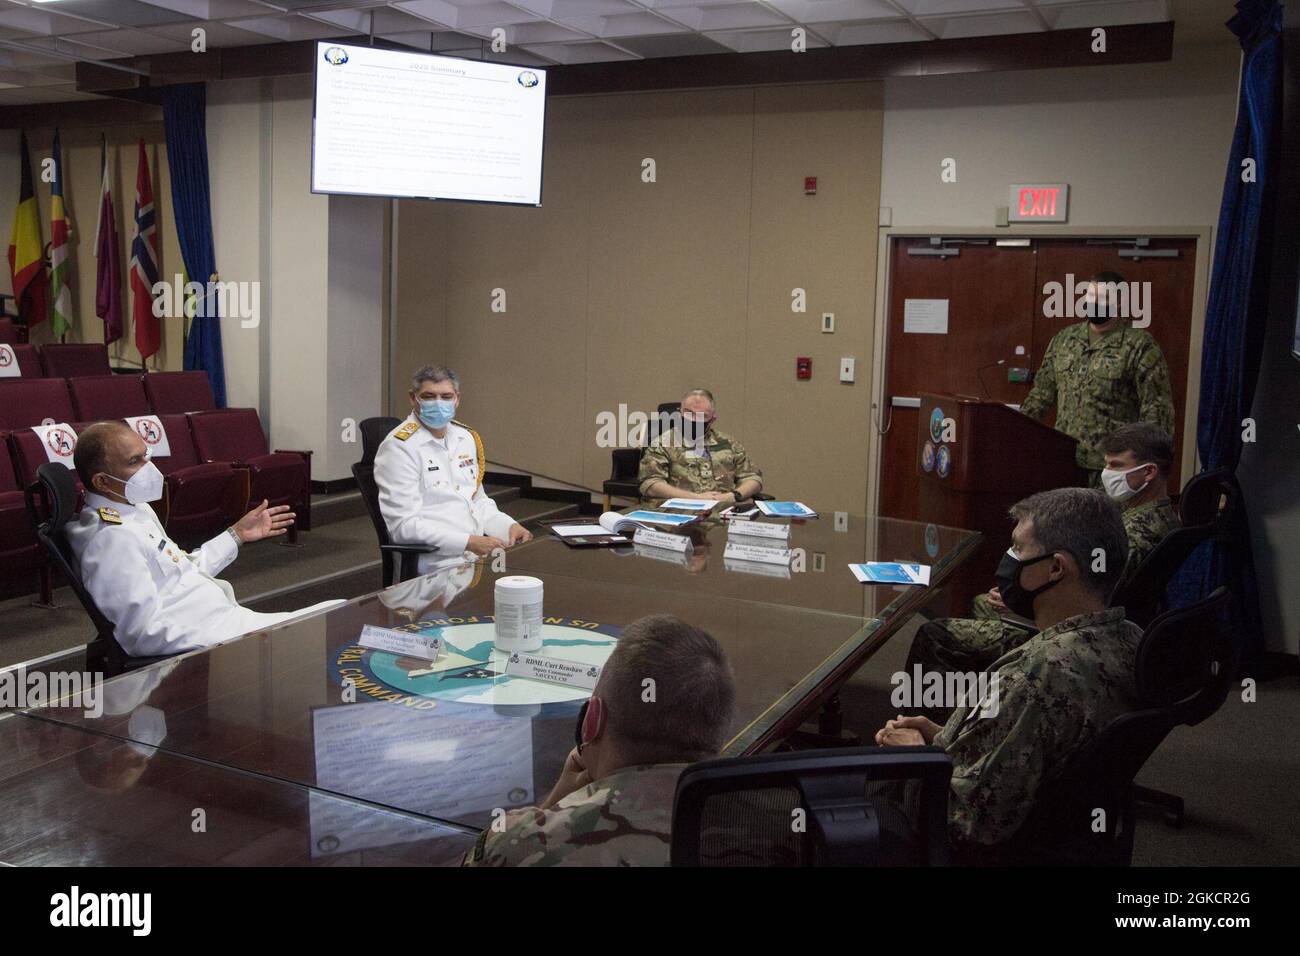 210315-N-IO414-1030 ACTIVITÉ DE SOUTIEN NAVAL BAHREÏN (15 MARS 2021) SMA. Muhammad Amjad Khan Niazi, à gauche, Chef d'état-major de la Marine du Pakistan, parle lors d'un bref exposé des opérations et des réalisations actuelles du FMC dans la région lors d'une visite du quartier général du Commandement central des Forces navales américaines (NAVCENT) à bord de l'activité de soutien naval de Bahreïn, en mars 15. NAVCENT est l'élément de la marine américaine du Commandement central des États-Unis dans la zone d'opérations de la 5e flotte des États-Unis, qui englobe environ 2.5 millions de kilomètres carrés de zone d'eau et inclut le golfe Arabique, le golfe d'Oman, la mer Rouge et certaines parties de l'océan Indien. Banque D'Images